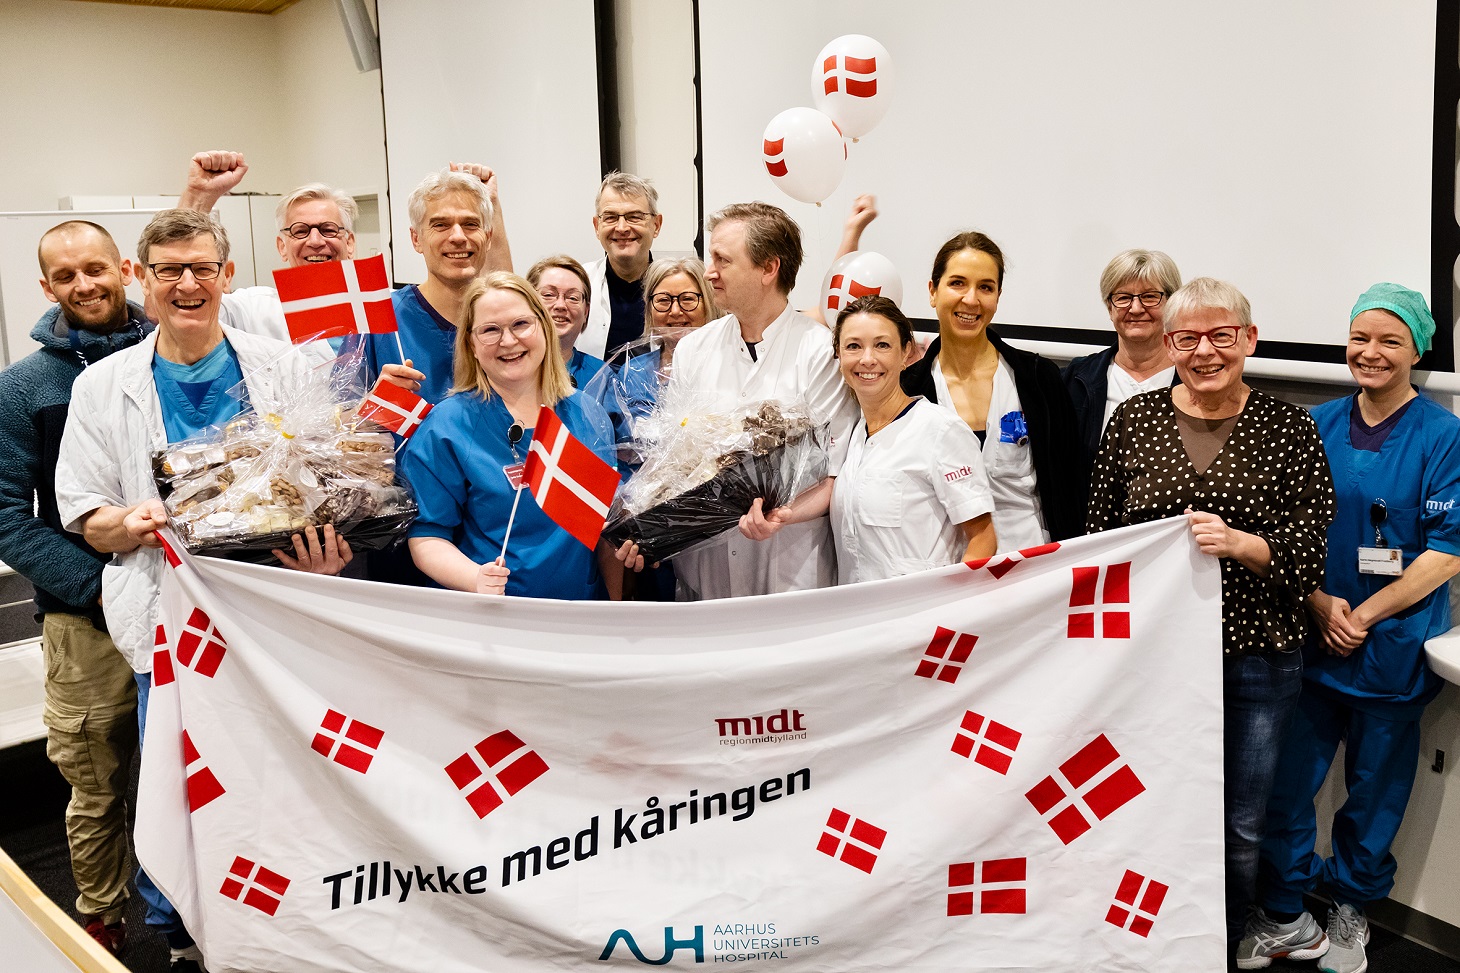 Medarbejdere fejrer at de er blevet kåret til Danmarks bedste hospital med flag